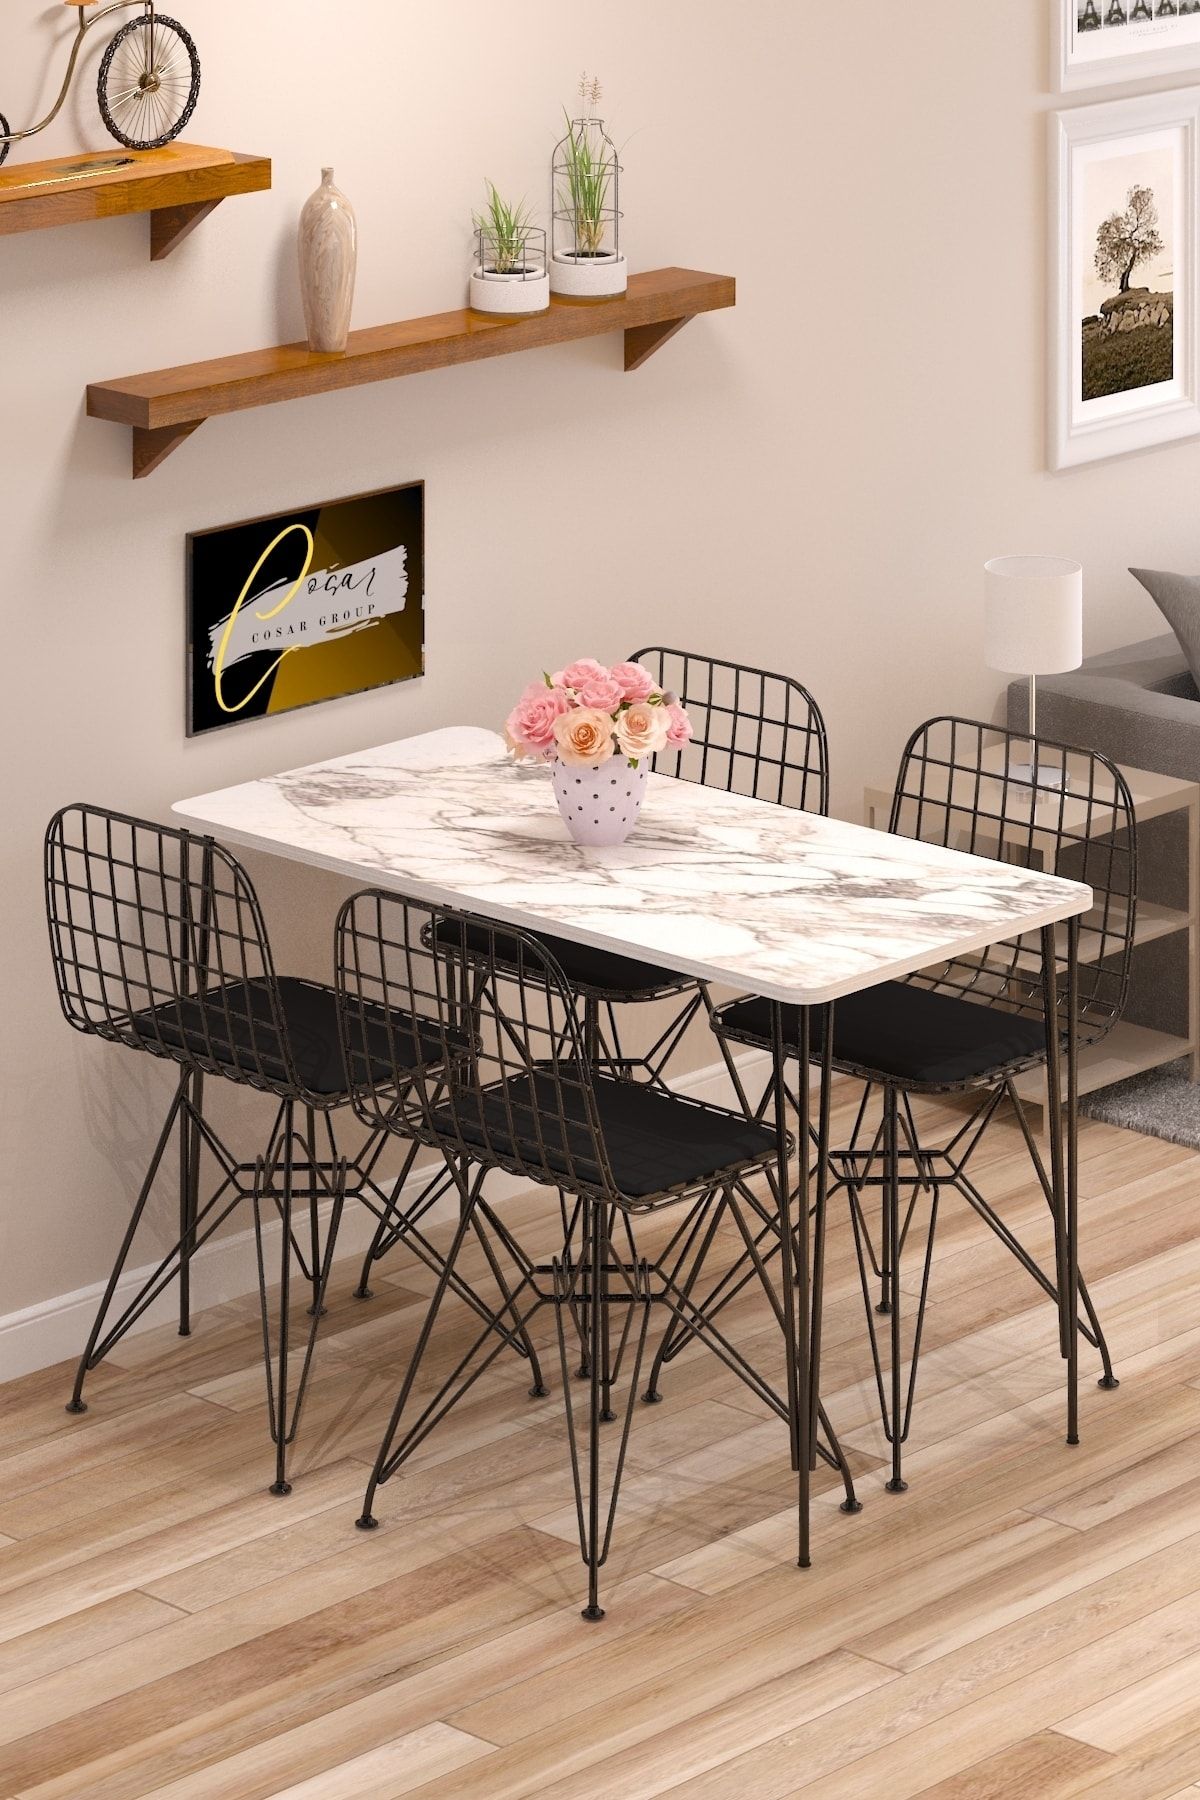 Cosargroup Yemek Masa Takımı Mutfak Masası Cafe Masası 4 Adet Tel Sandalye 1 Adet Masa 60x120 Beyaz Gri